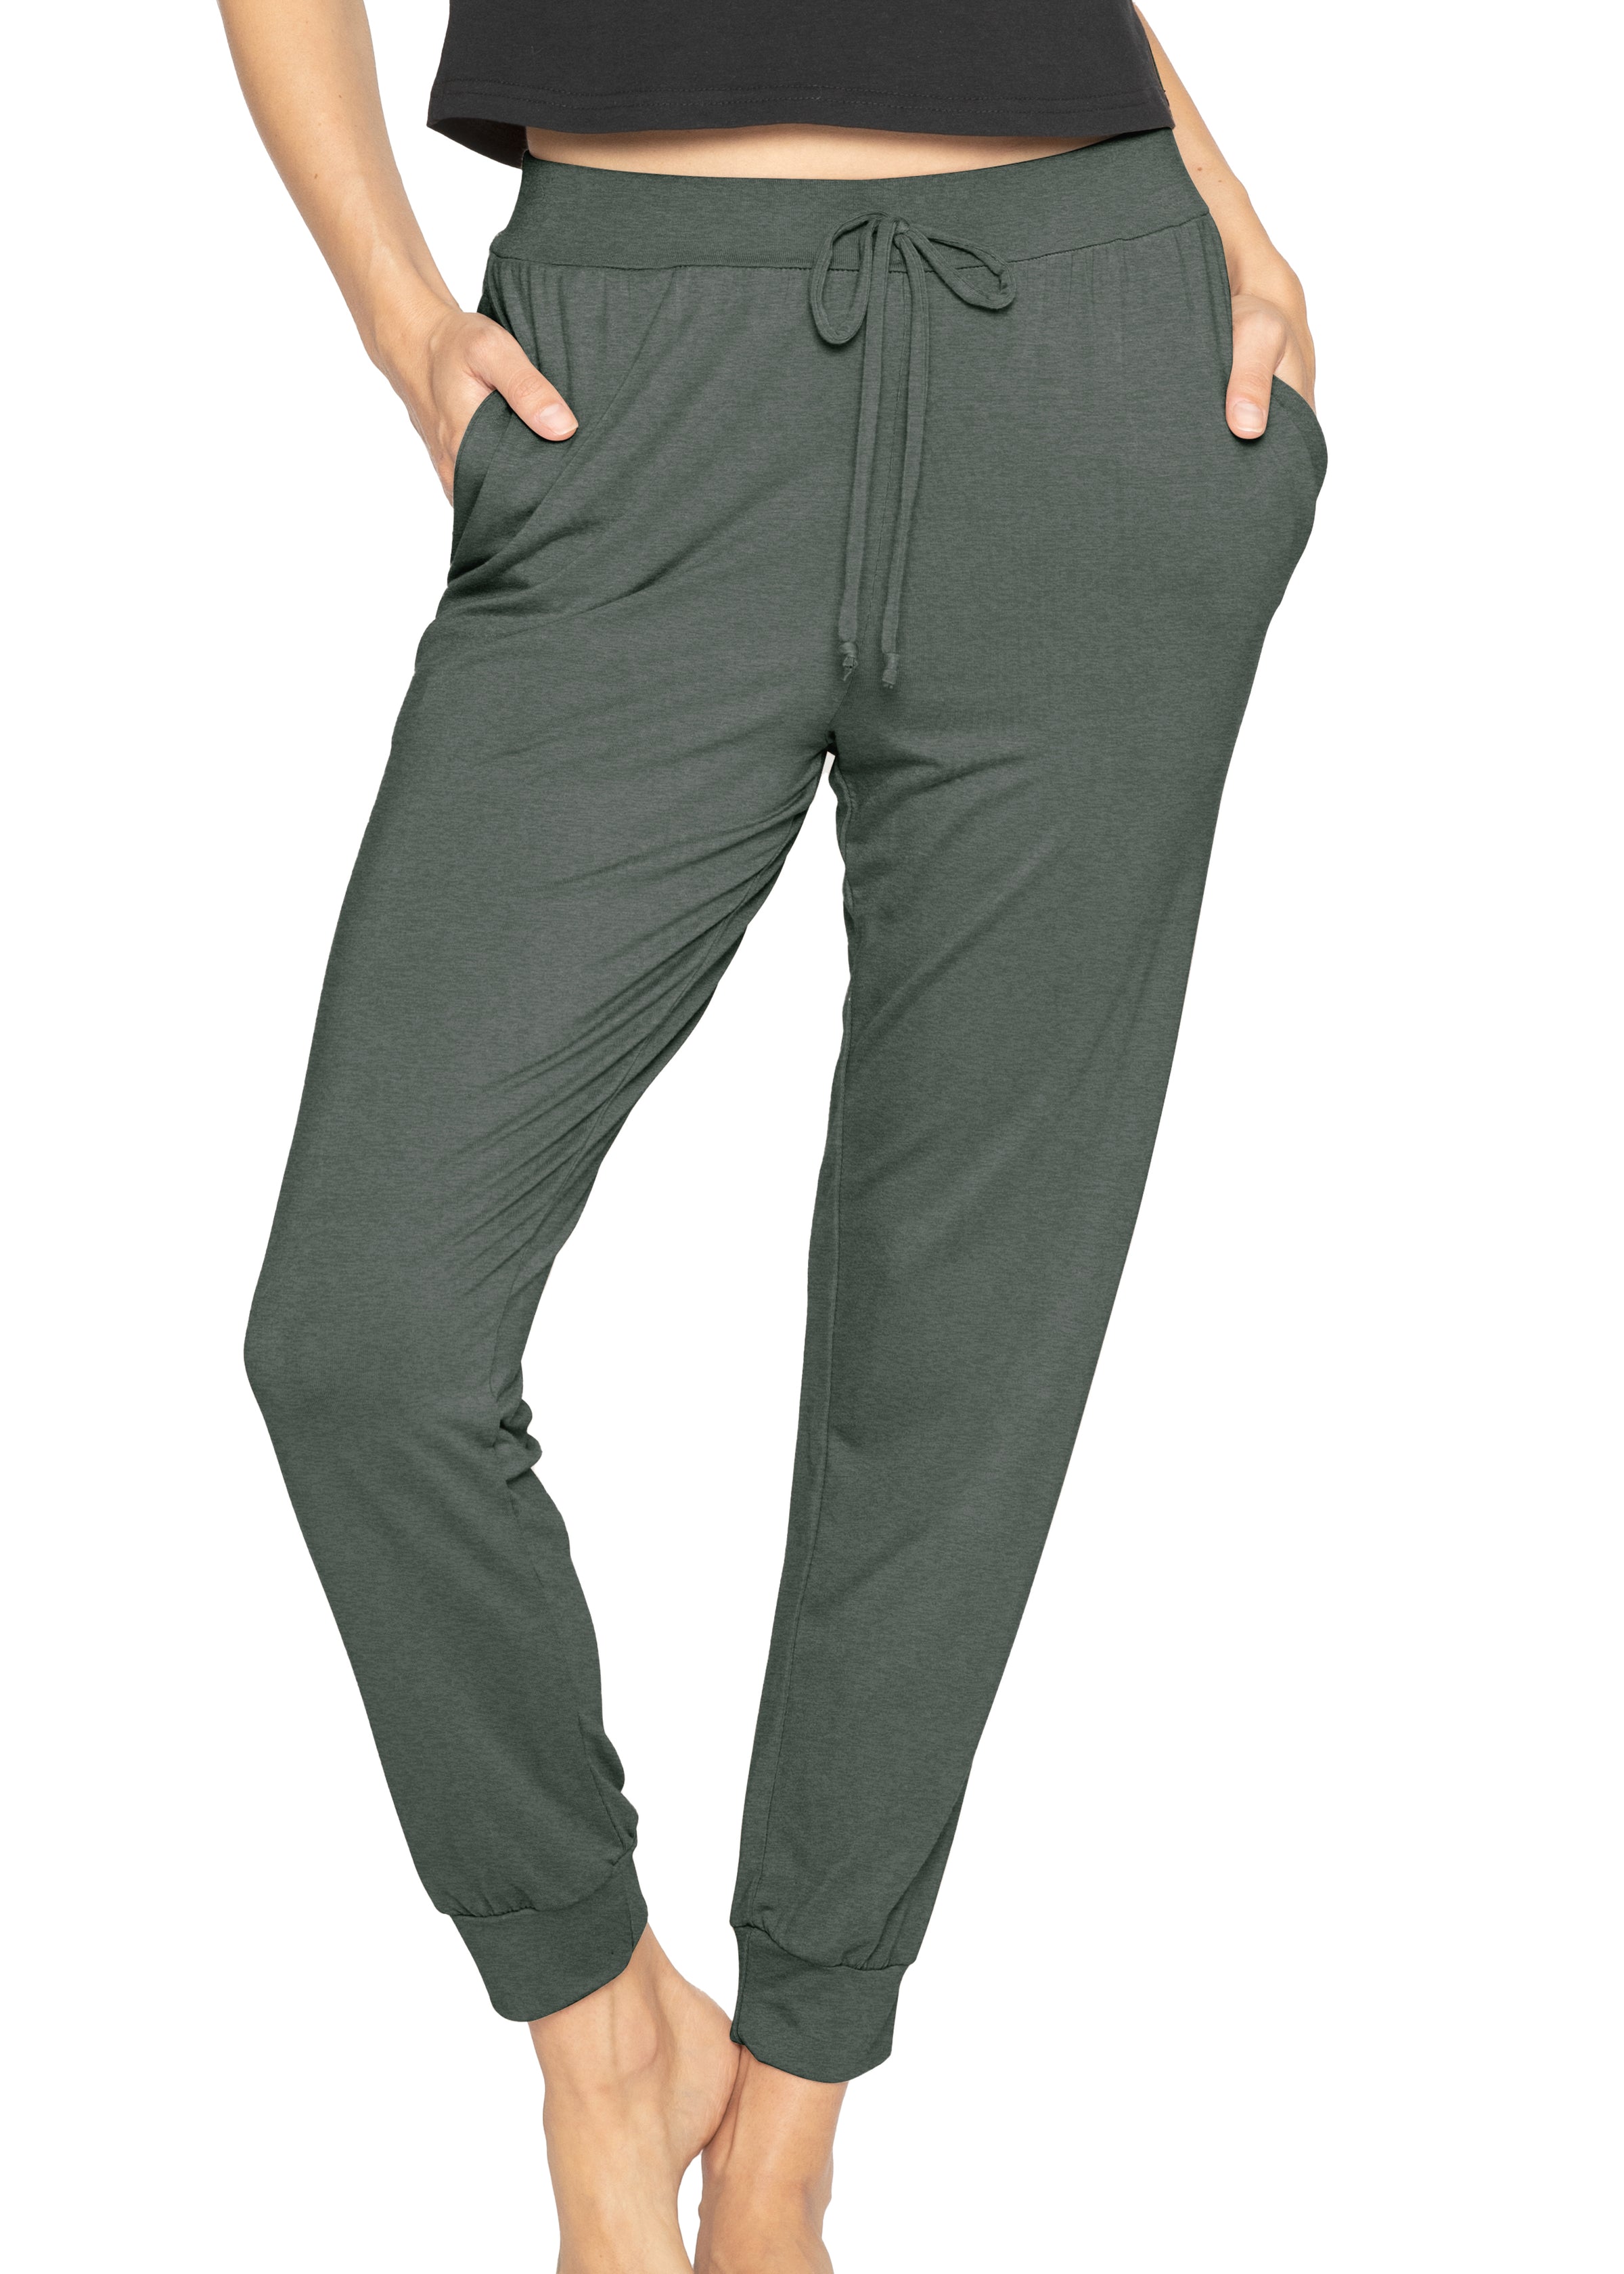 Velvet jogger pants black | Trendy Pants - Lush Fashion Lounge